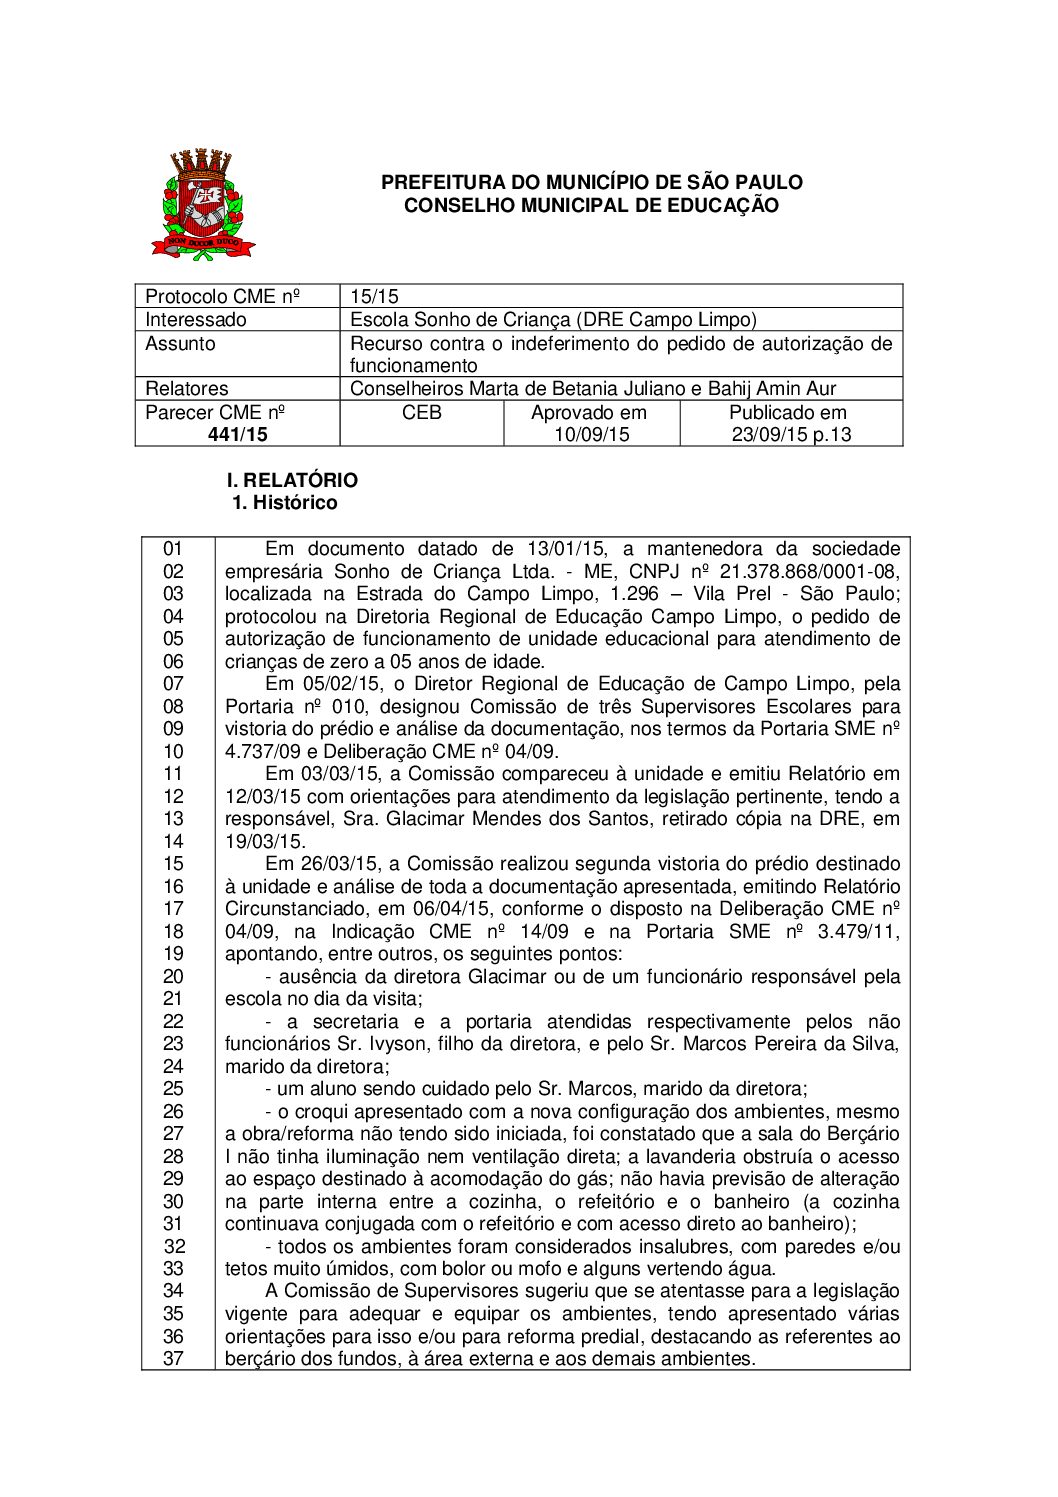 Parecer CME nº 441/2015 - Escola Sonho de Criança (DRE Campo Limpo) - Recurso contra o indeferimento do pedido de autorização de funcionamento 